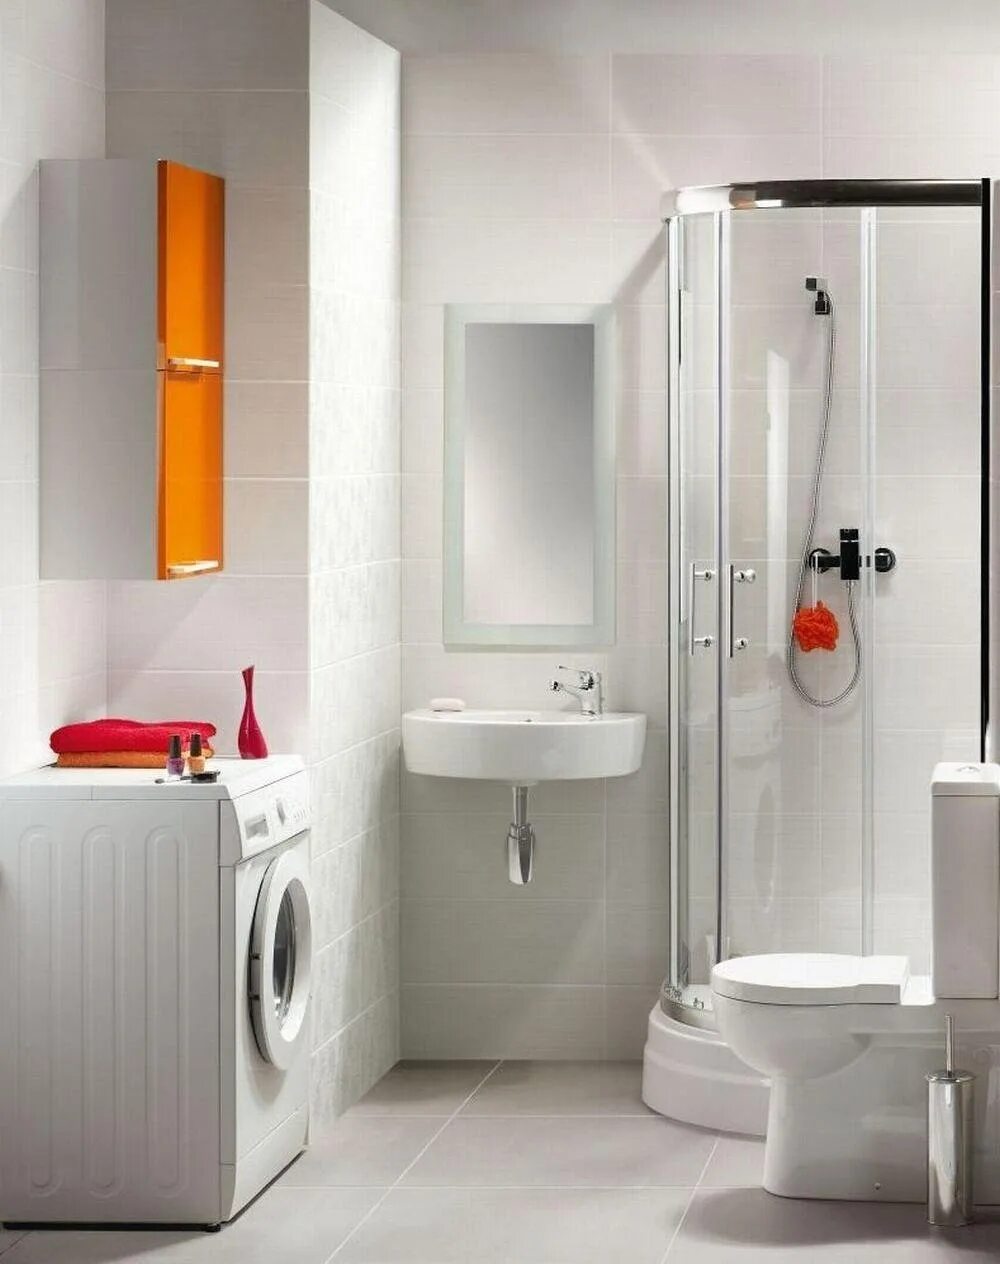 Унитаз Cersanit Nano p-ko-n011-2/4-DL. Маленькая душевая с туалетом и раковиной. Маленькая ванная с душевой кабинкой. Компактный санузел с душевой. Маленькие душевые комнаты с туалетом